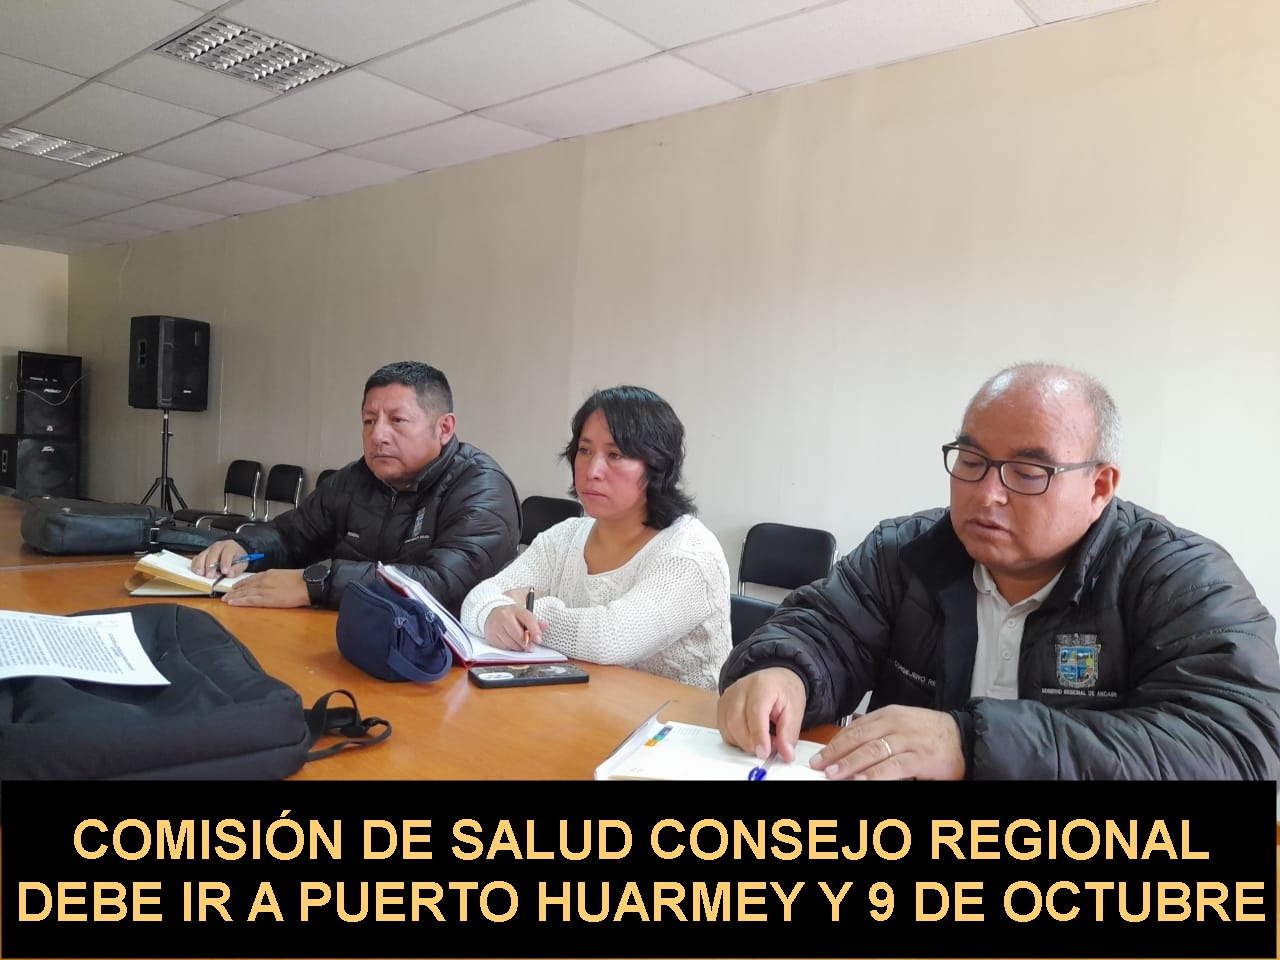 Huarmey: Puerto Huarmey y 9 de Octubre pide presencia de Comisión de Salud por casos de dengue y Arsénico